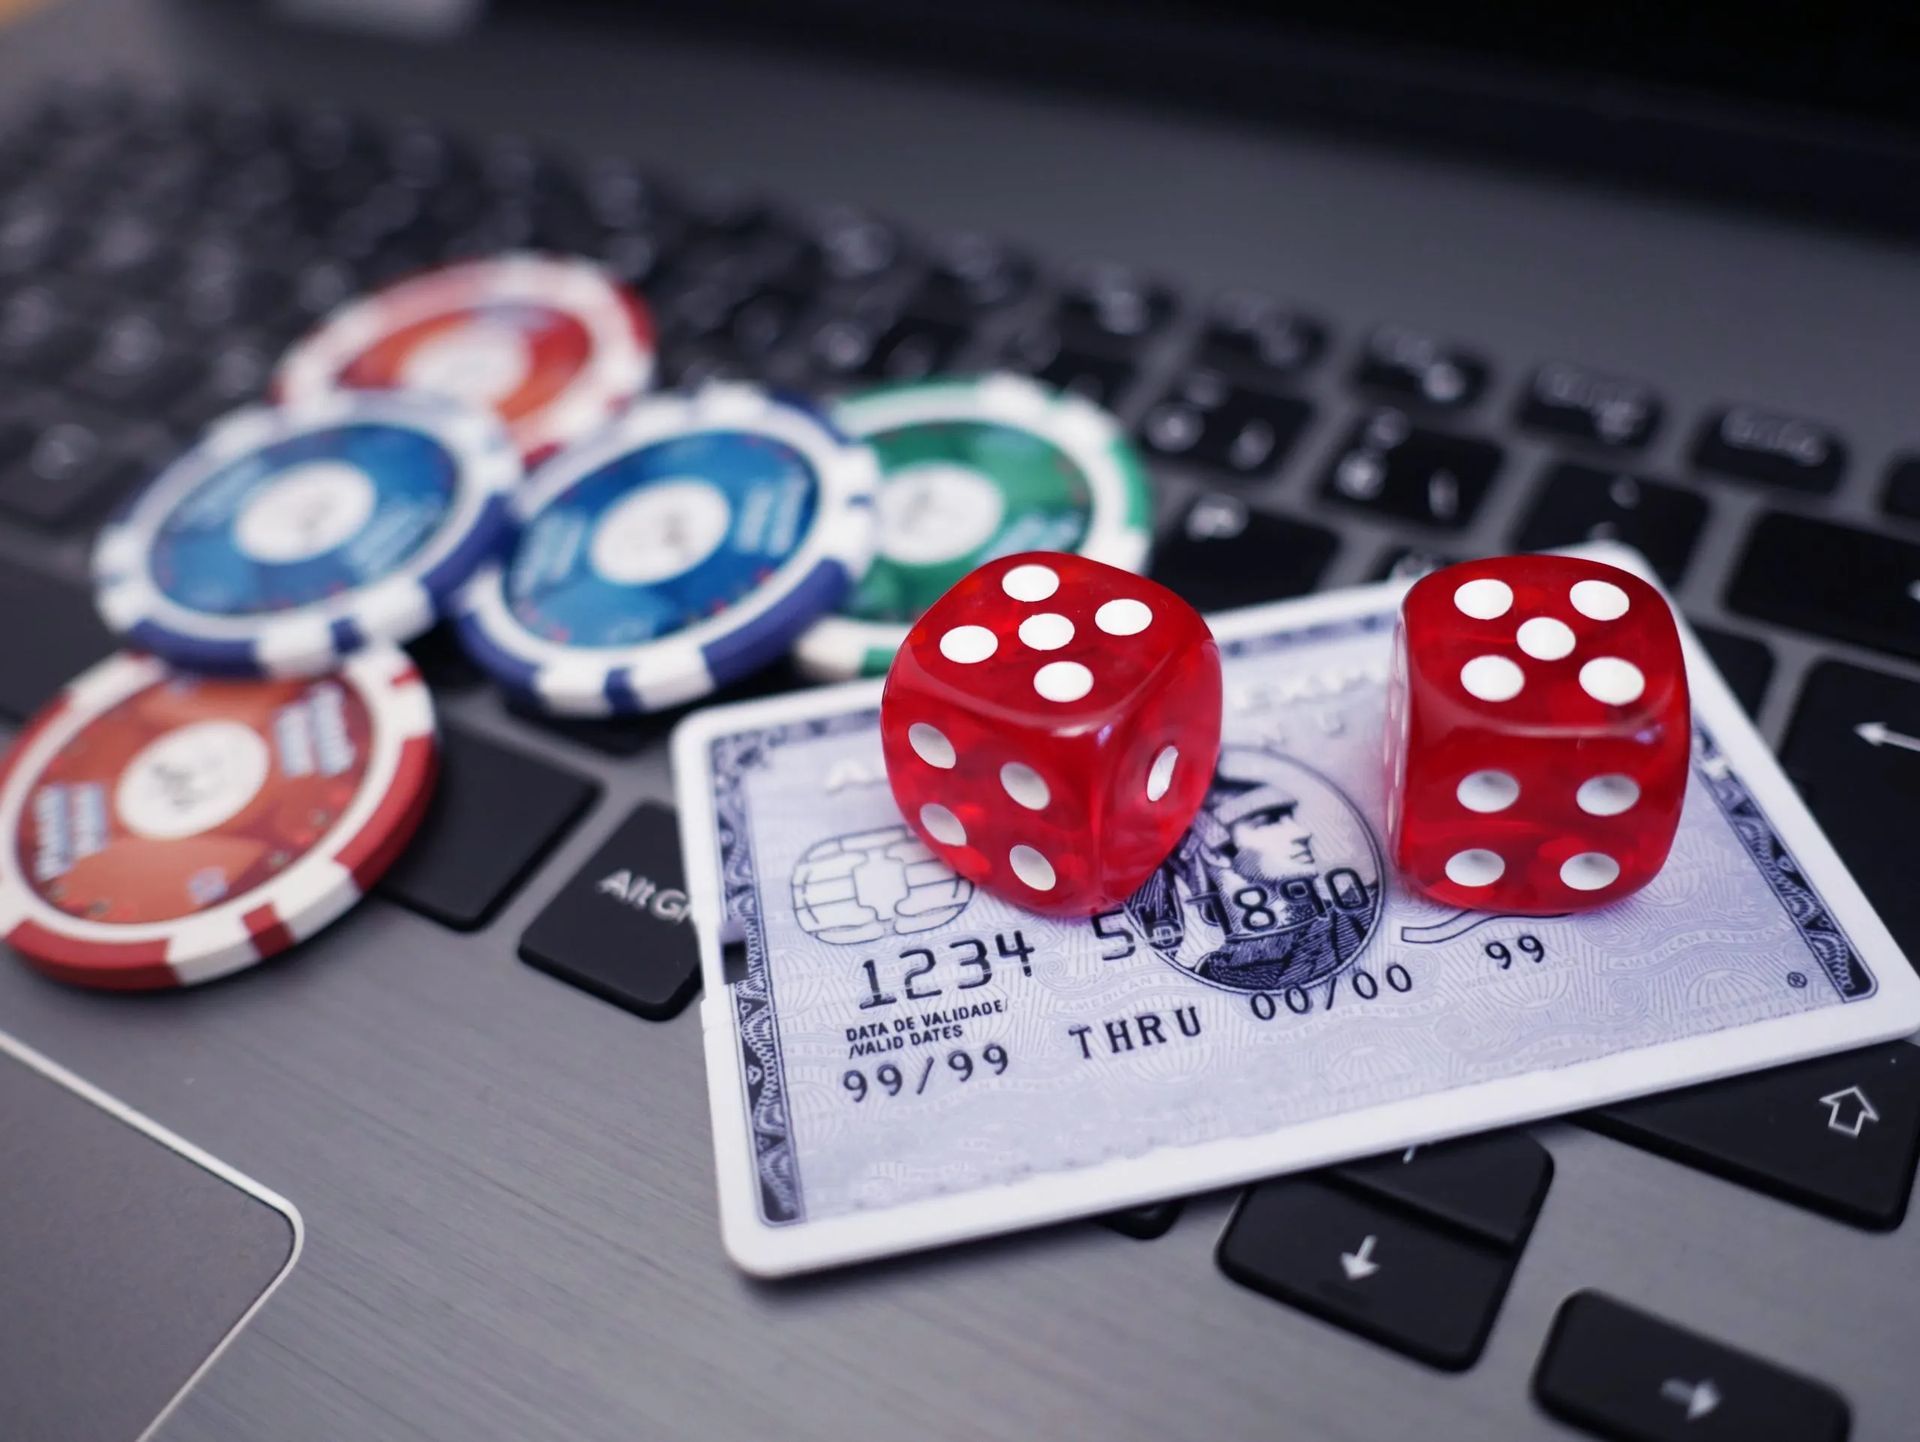 Как защитить свой счет в онлайн-казино?